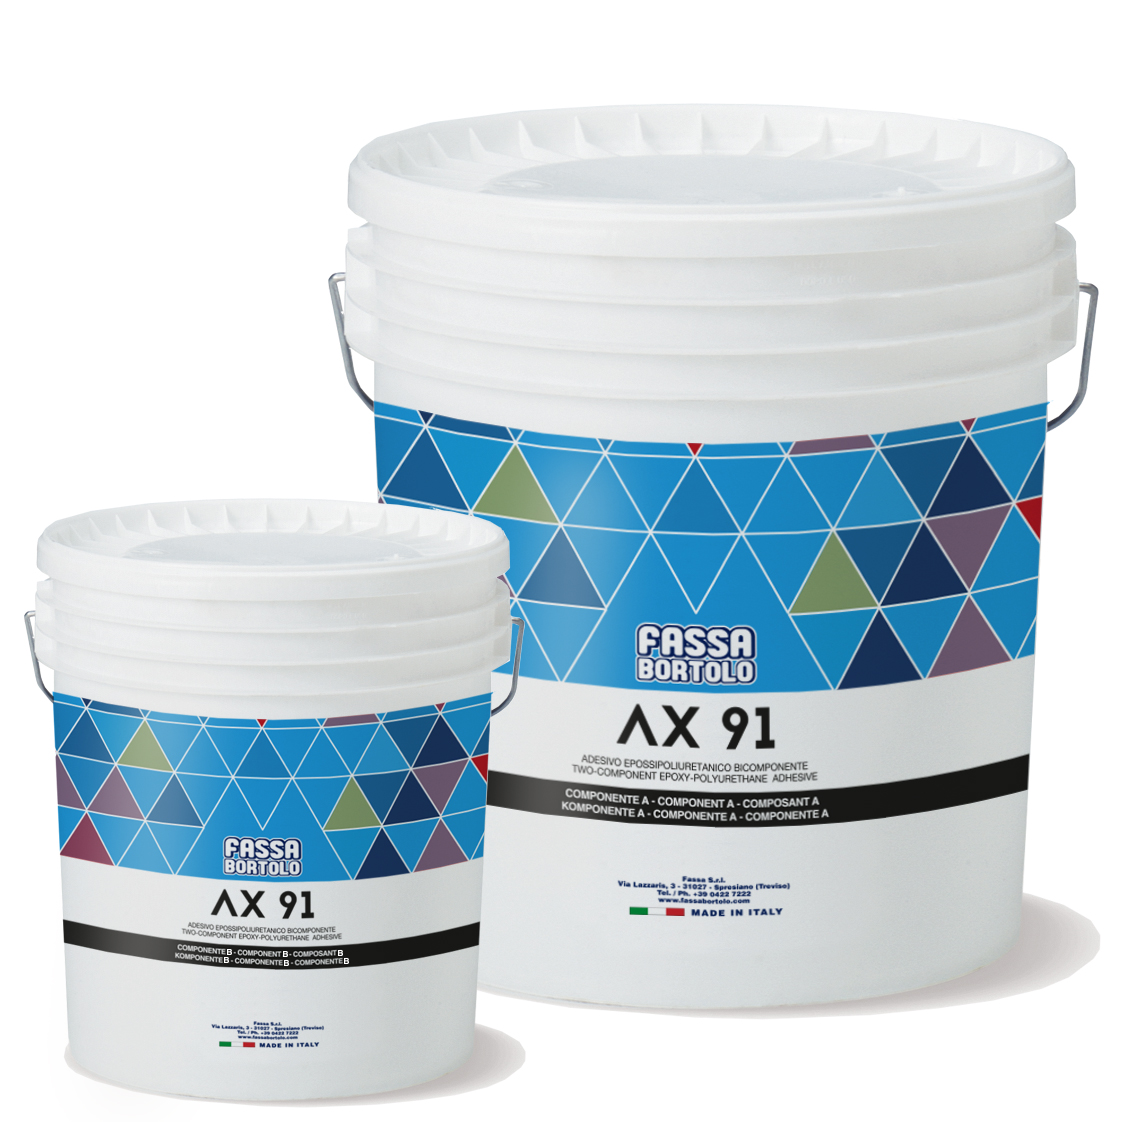 AX 91: Cola epóxi-poliuretano bicomponente, branca e cinza, de altíssima flexibilidade, para interiores e exteriores